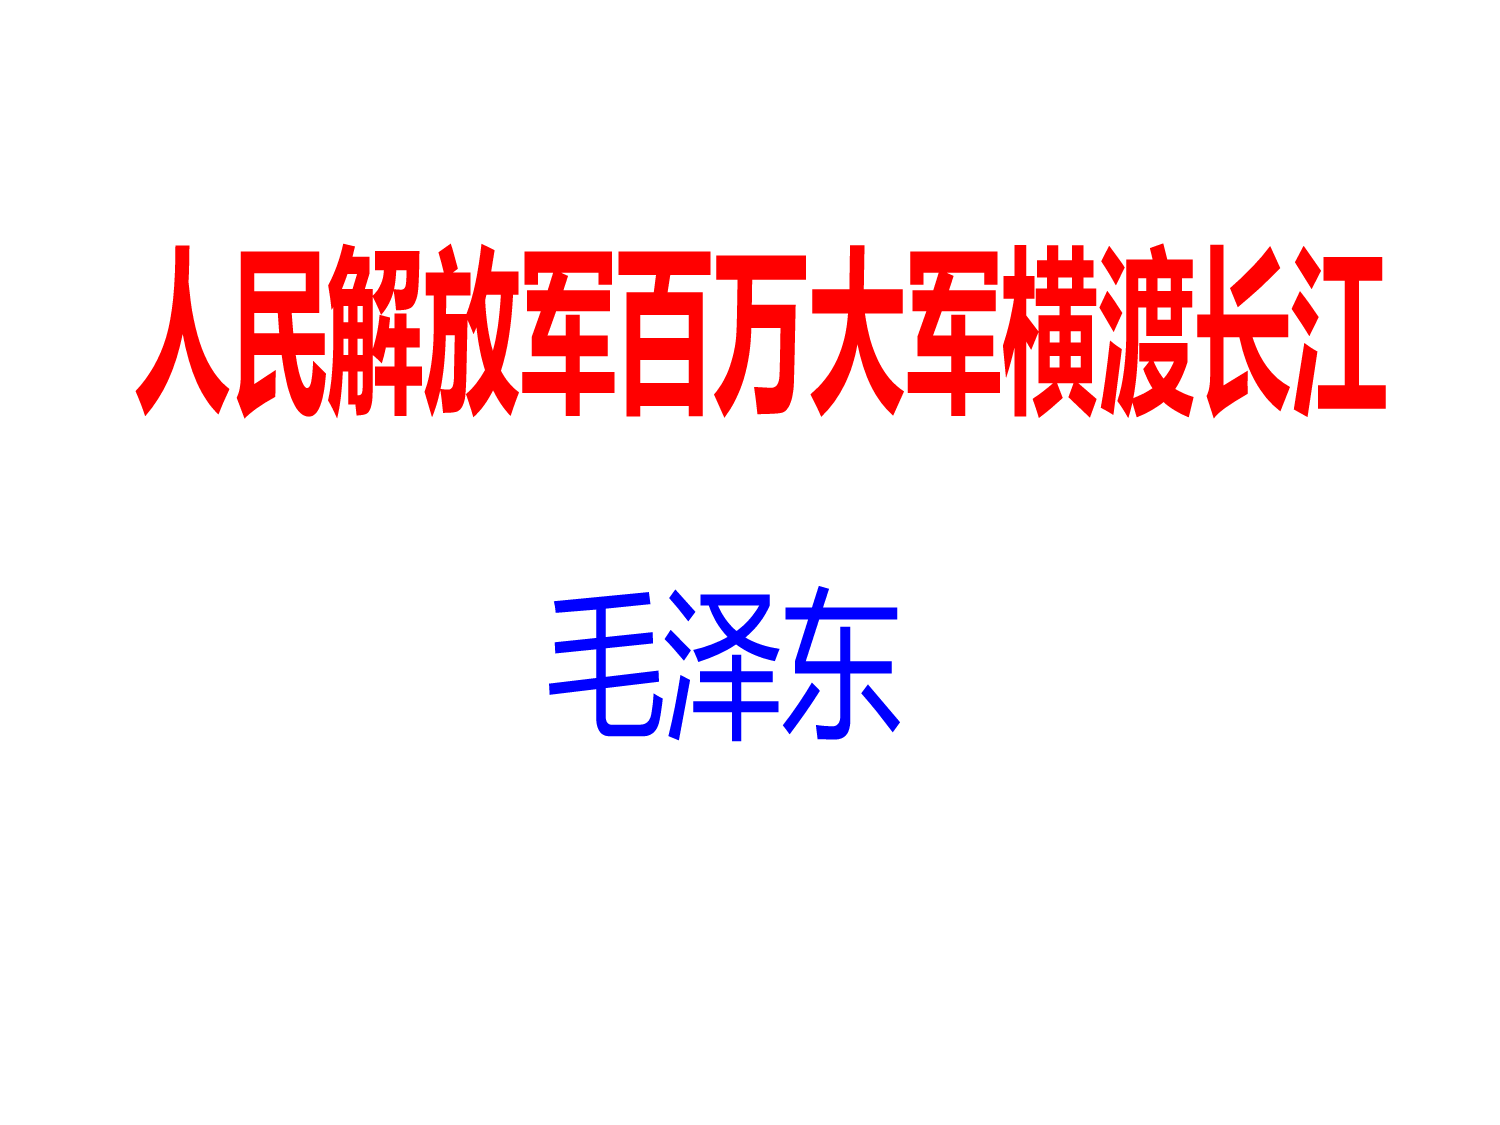 消息二则人民解放军百万大军横渡长江